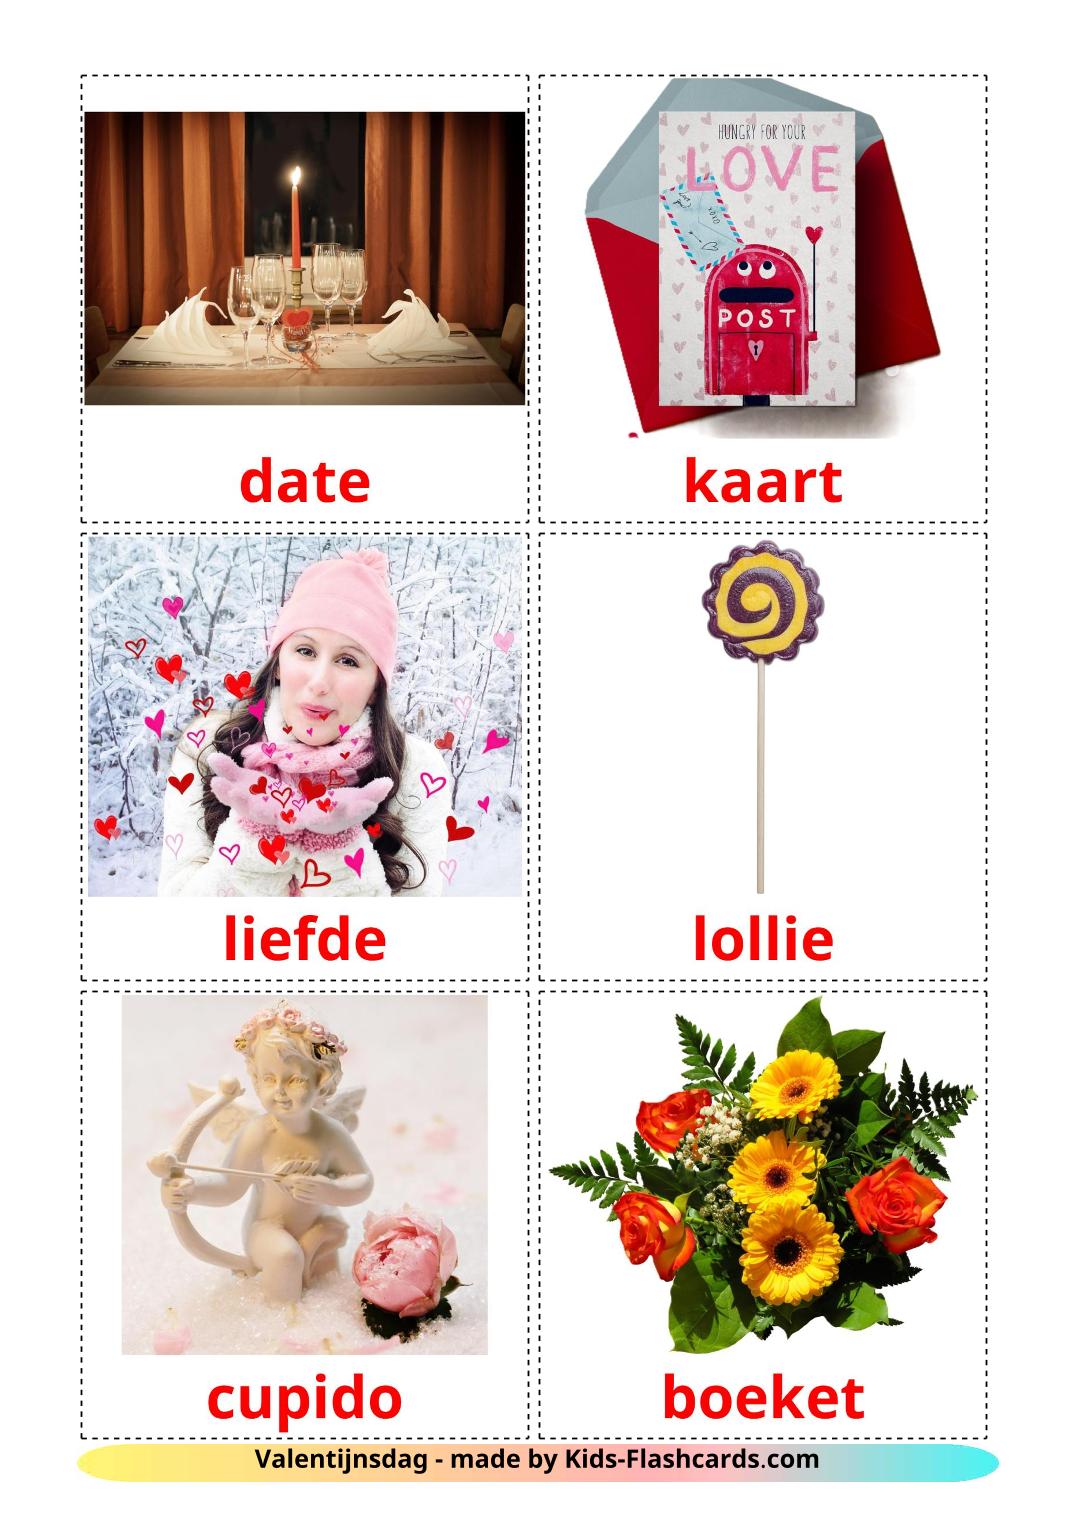 San Valentín - 18 fichas de holandés para imprimir gratis 